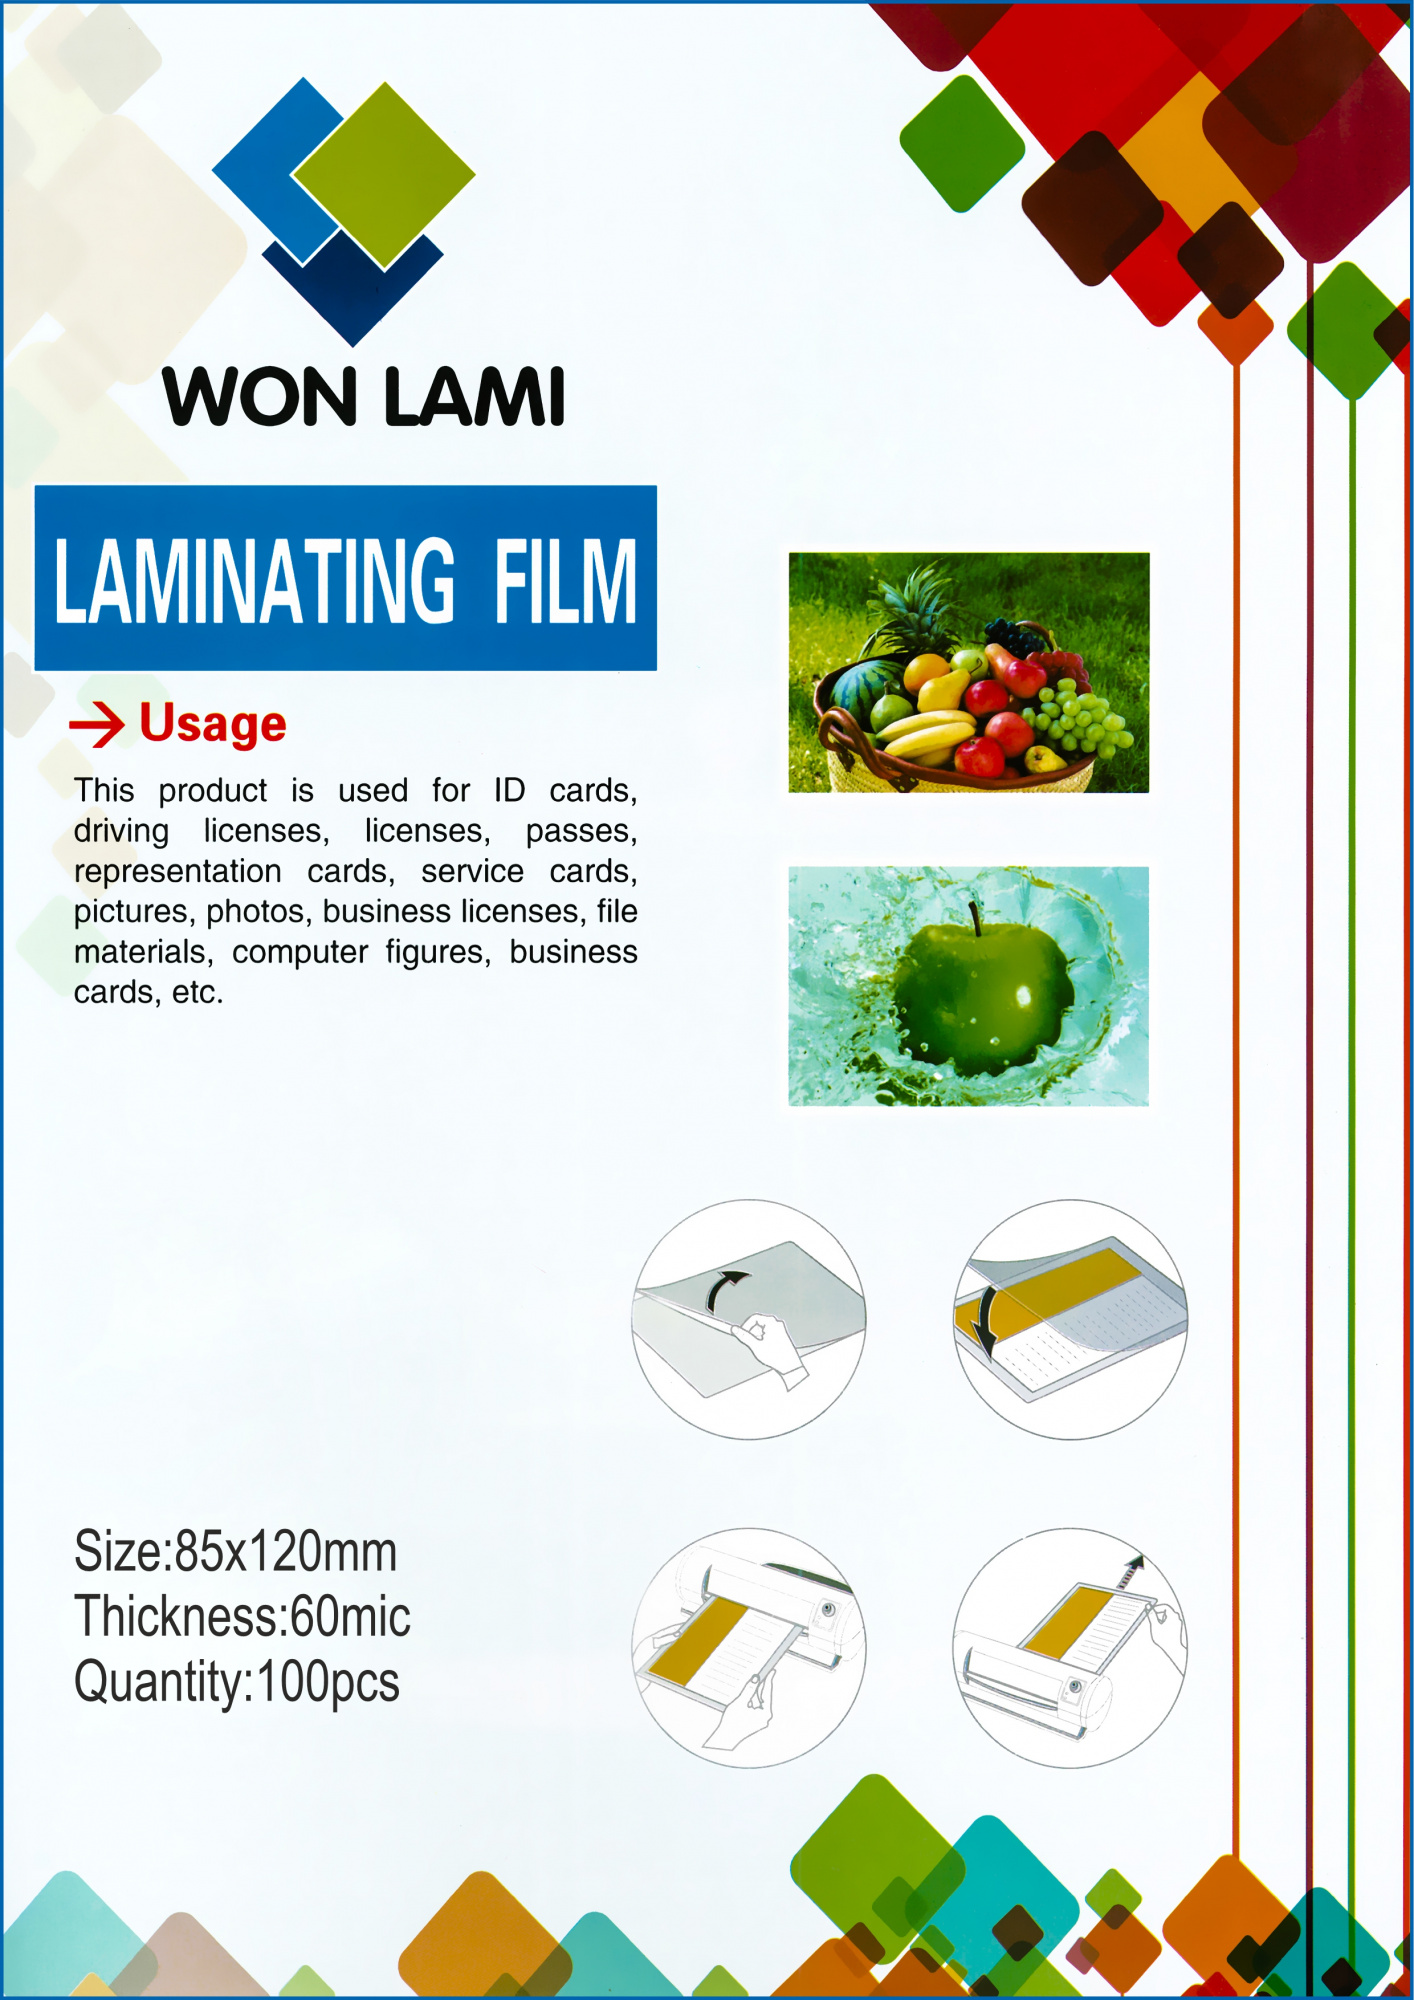 Пленка для ламинирования Won Lami 60мкм, 85x120, 100 шт., глянцевая (7664)